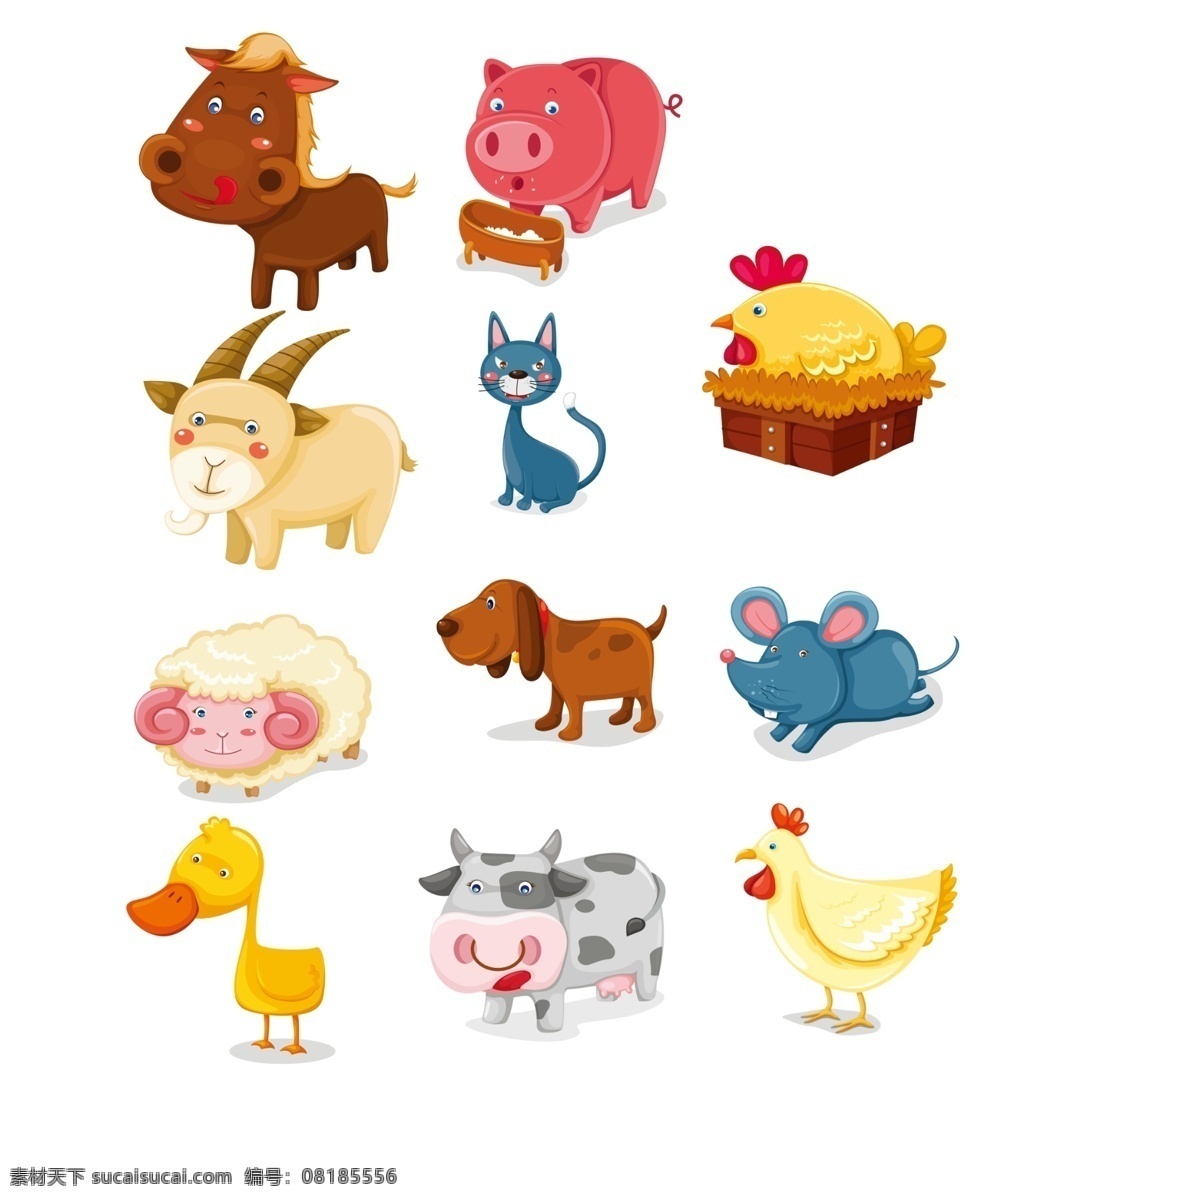 可爱卡通动物 ps素材 鸡 牛 鸭 鼠 狗 羊 猫 猪 动物 广告设计模板 源文件